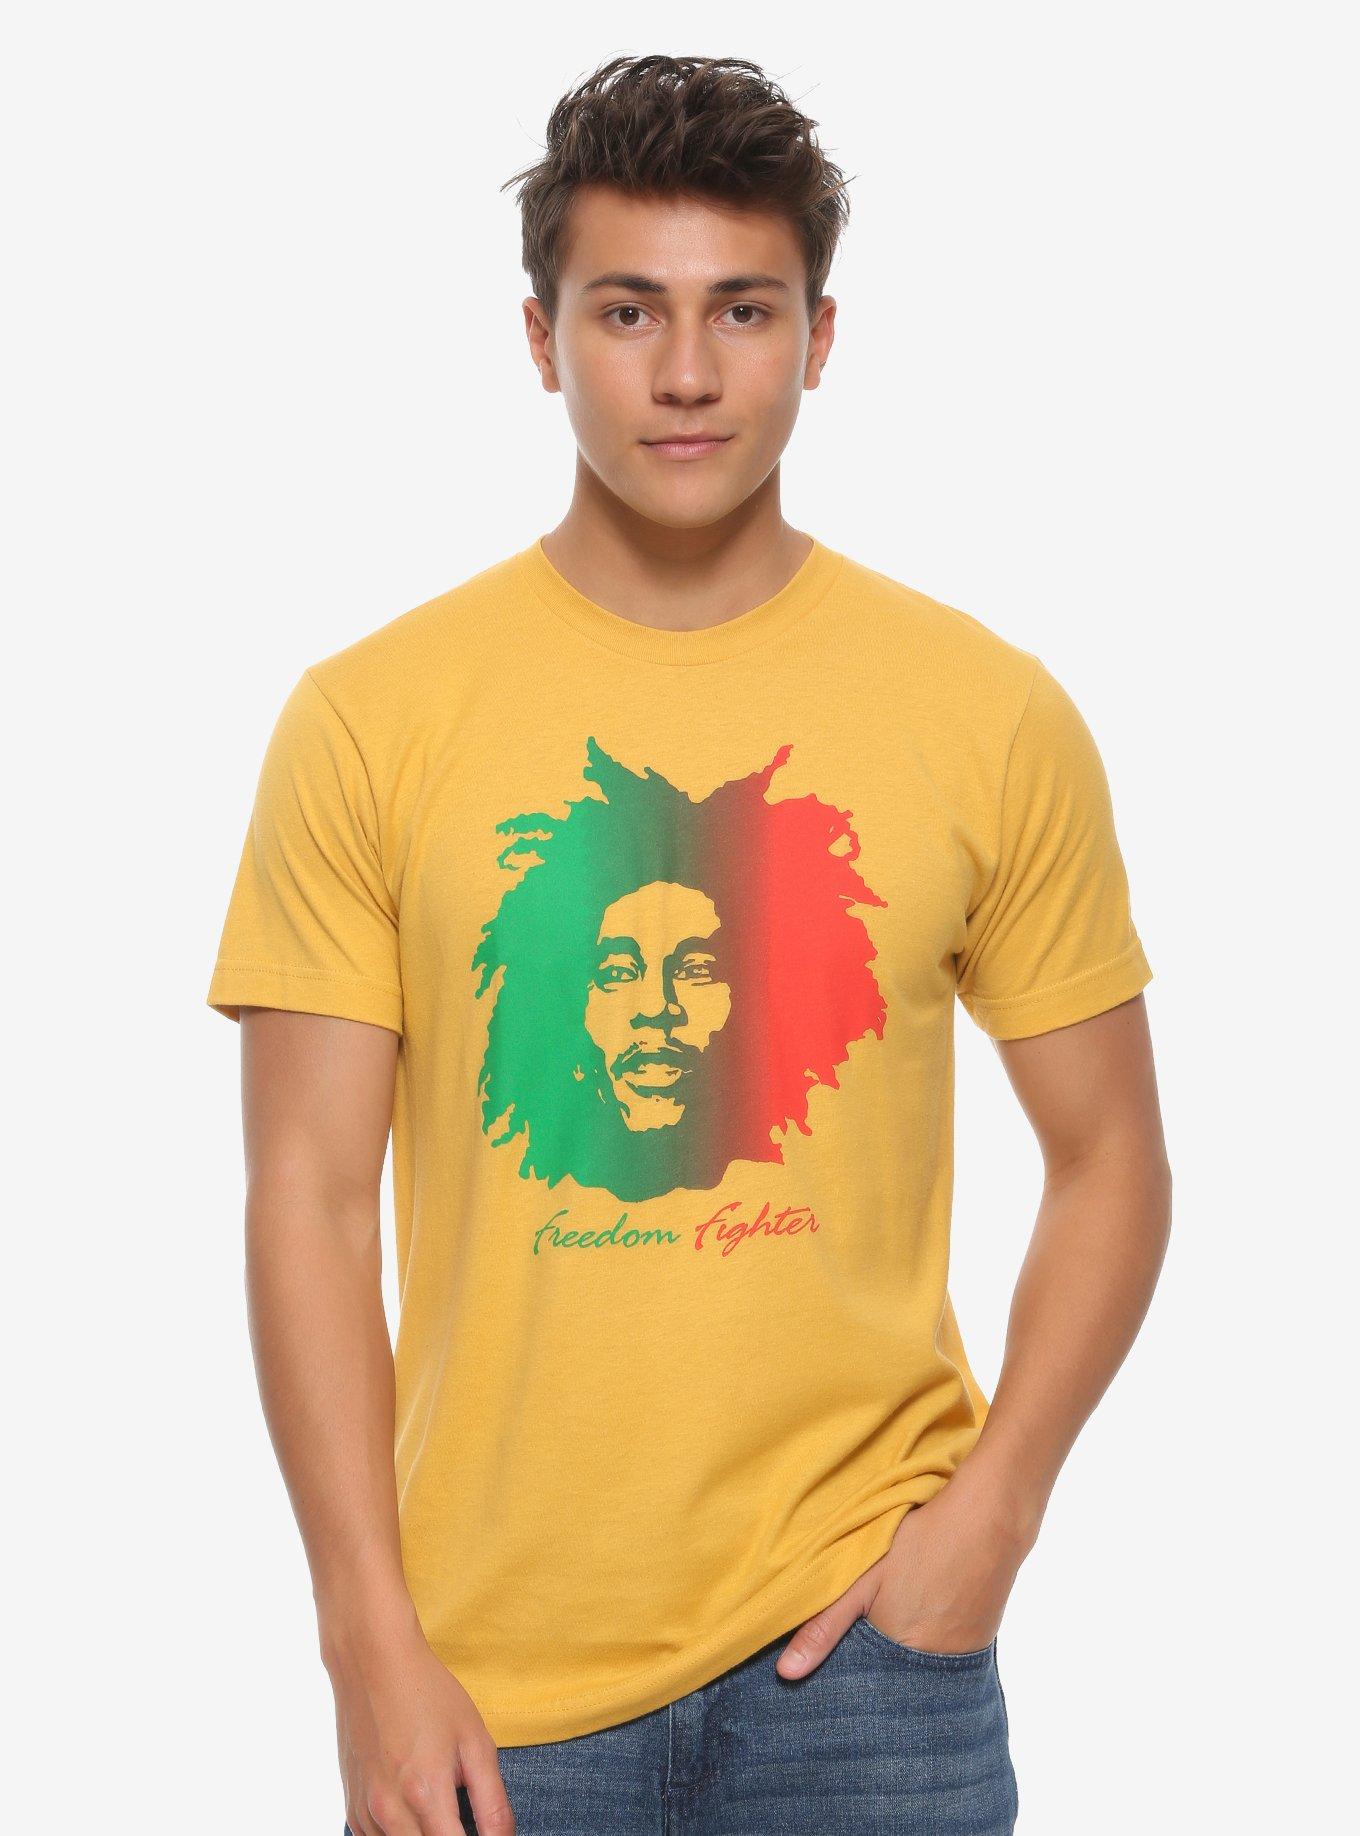 Bob Marley T-Shirts and Clothing | Hot Topic